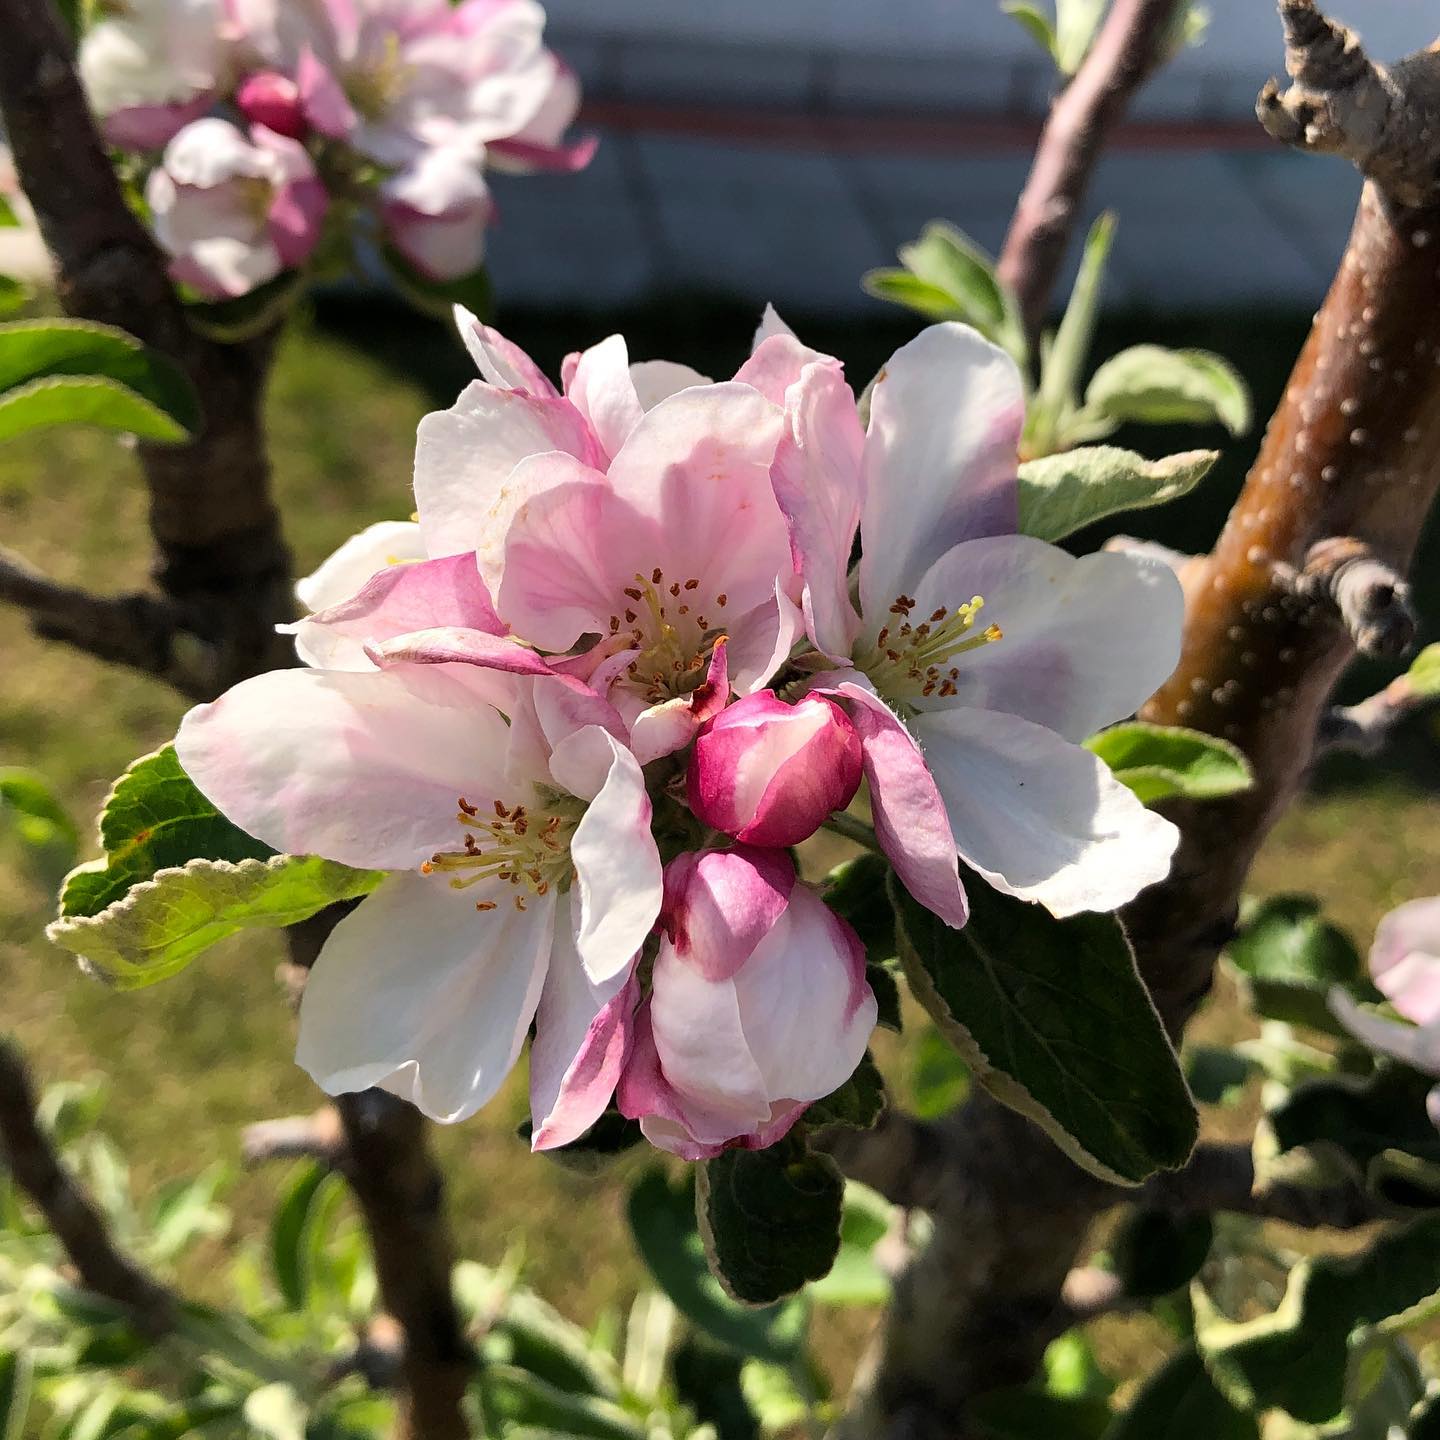 Apfelblüte #apfelbaum #apfelblüte #appleblossom #spring #blossom #garten #baum